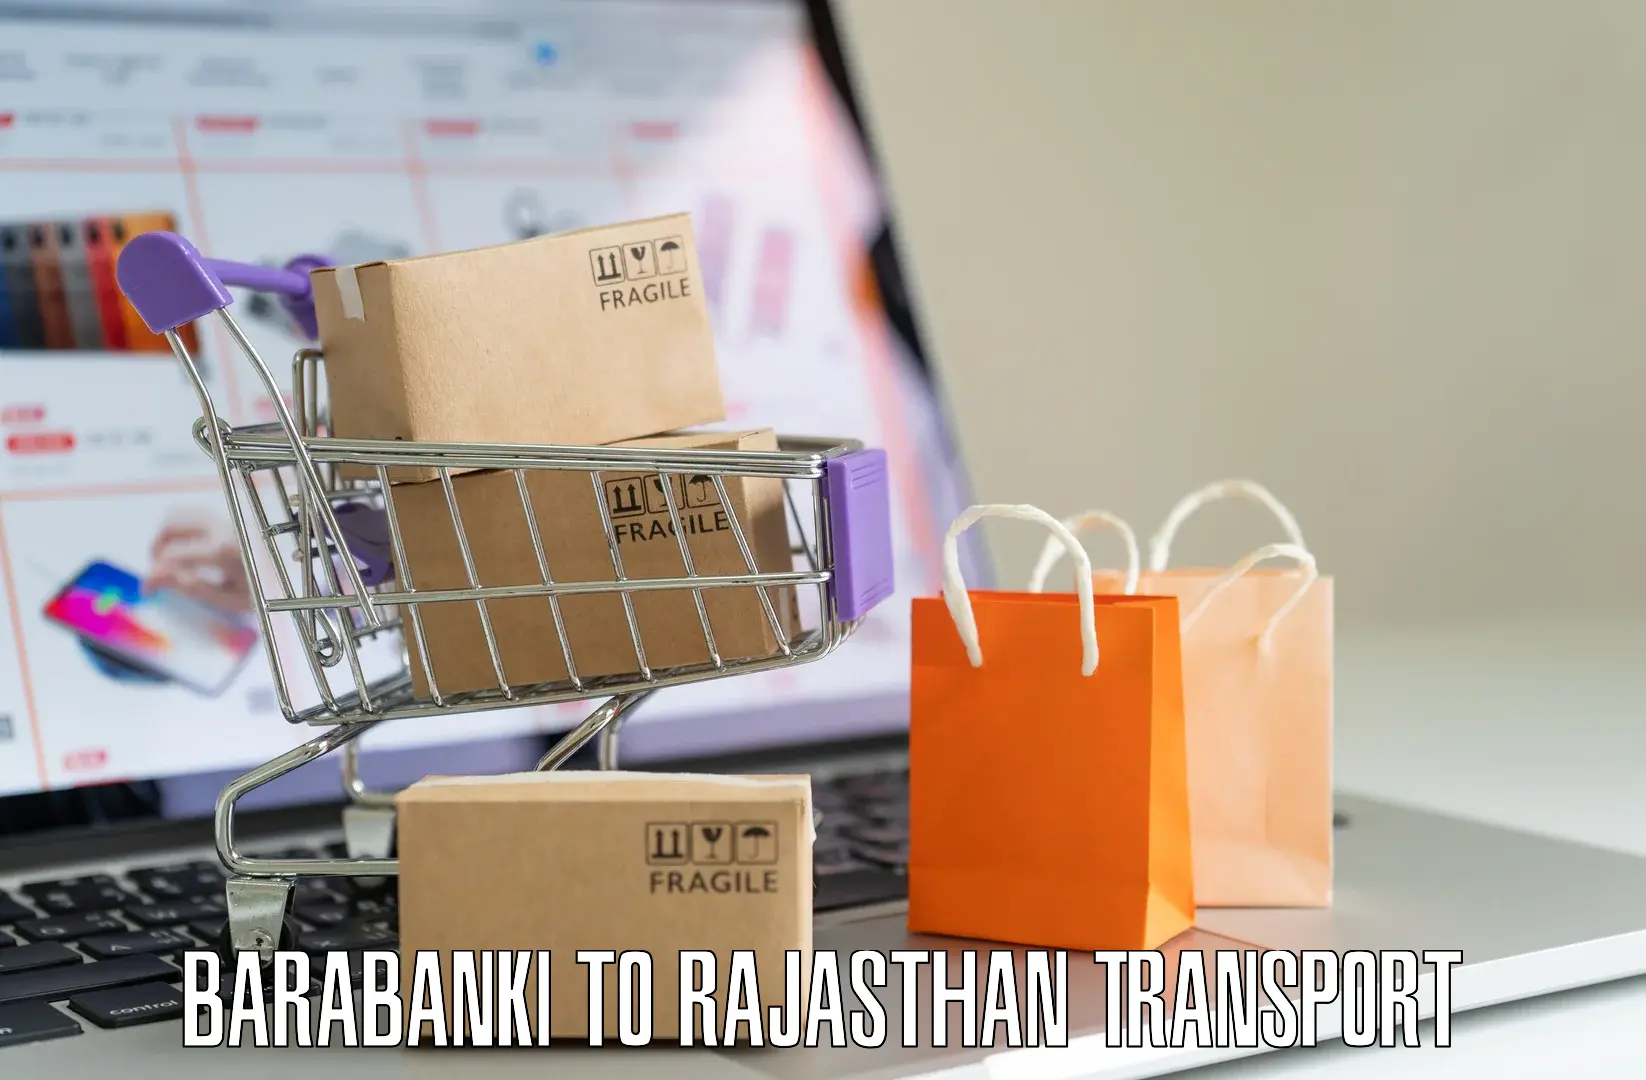 Transport services Barabanki to Bansur